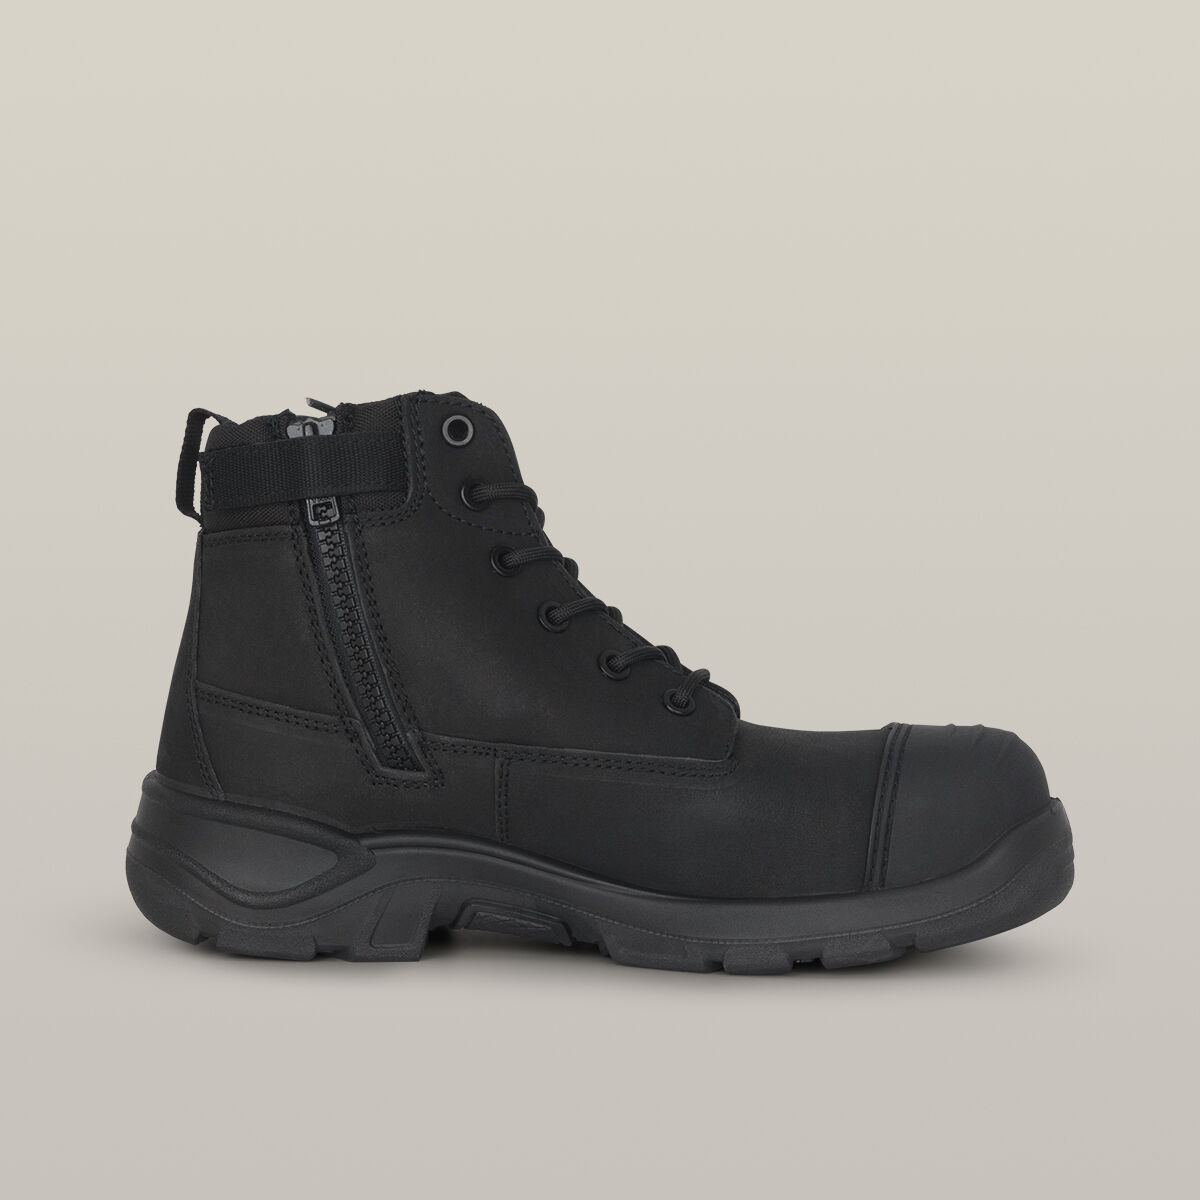 TOUGHMAXX 6Z Steel Toe Safety Boot - Black | Hard Yakka Australia